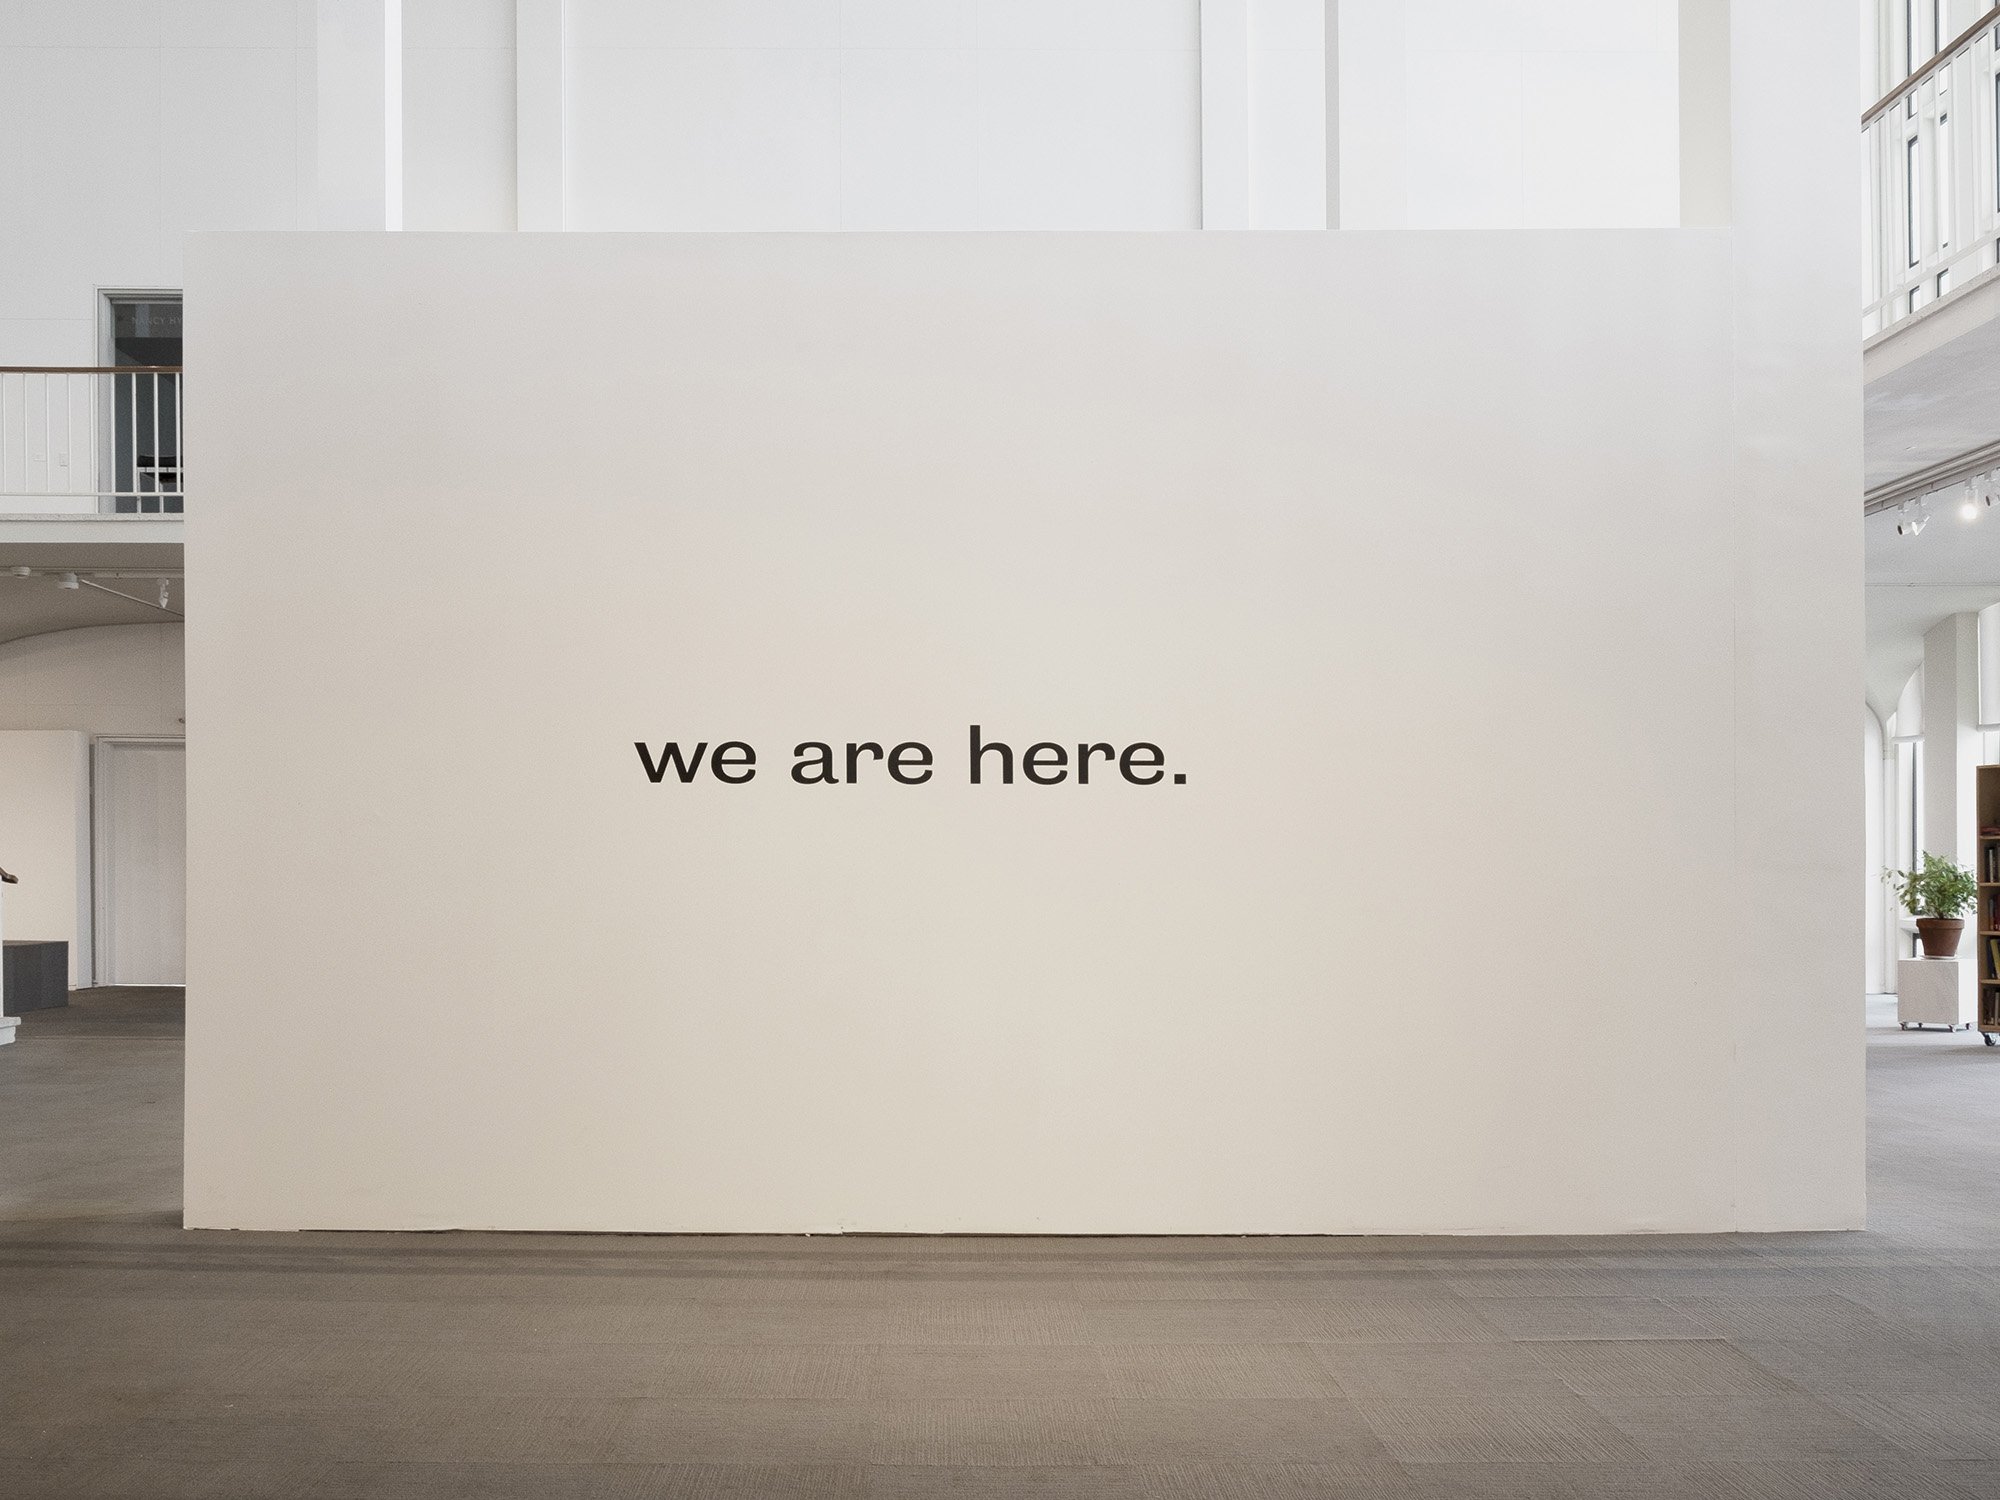 Nicole Cherubini, we are here, 2019, installation view